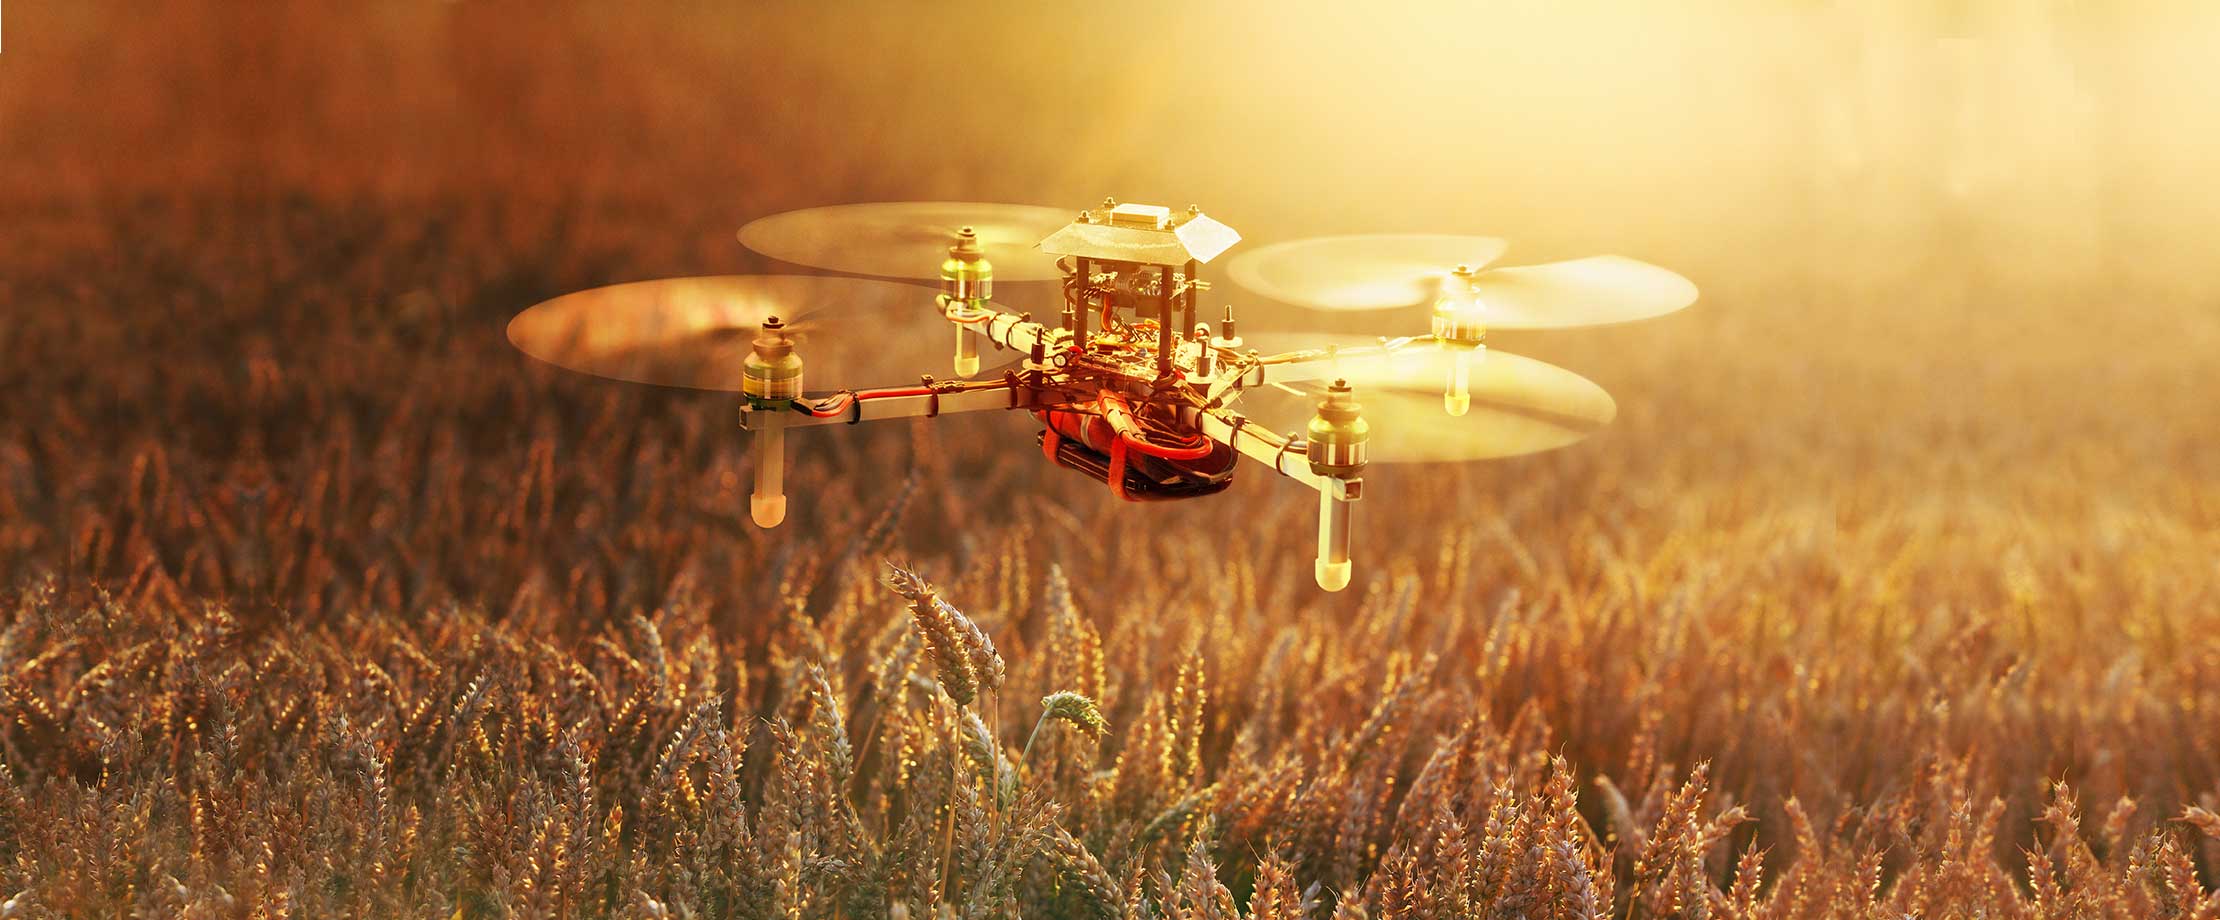 Eine Drohne fliegt über einer Wiese, im Hintergrund geht die Sonne unter.